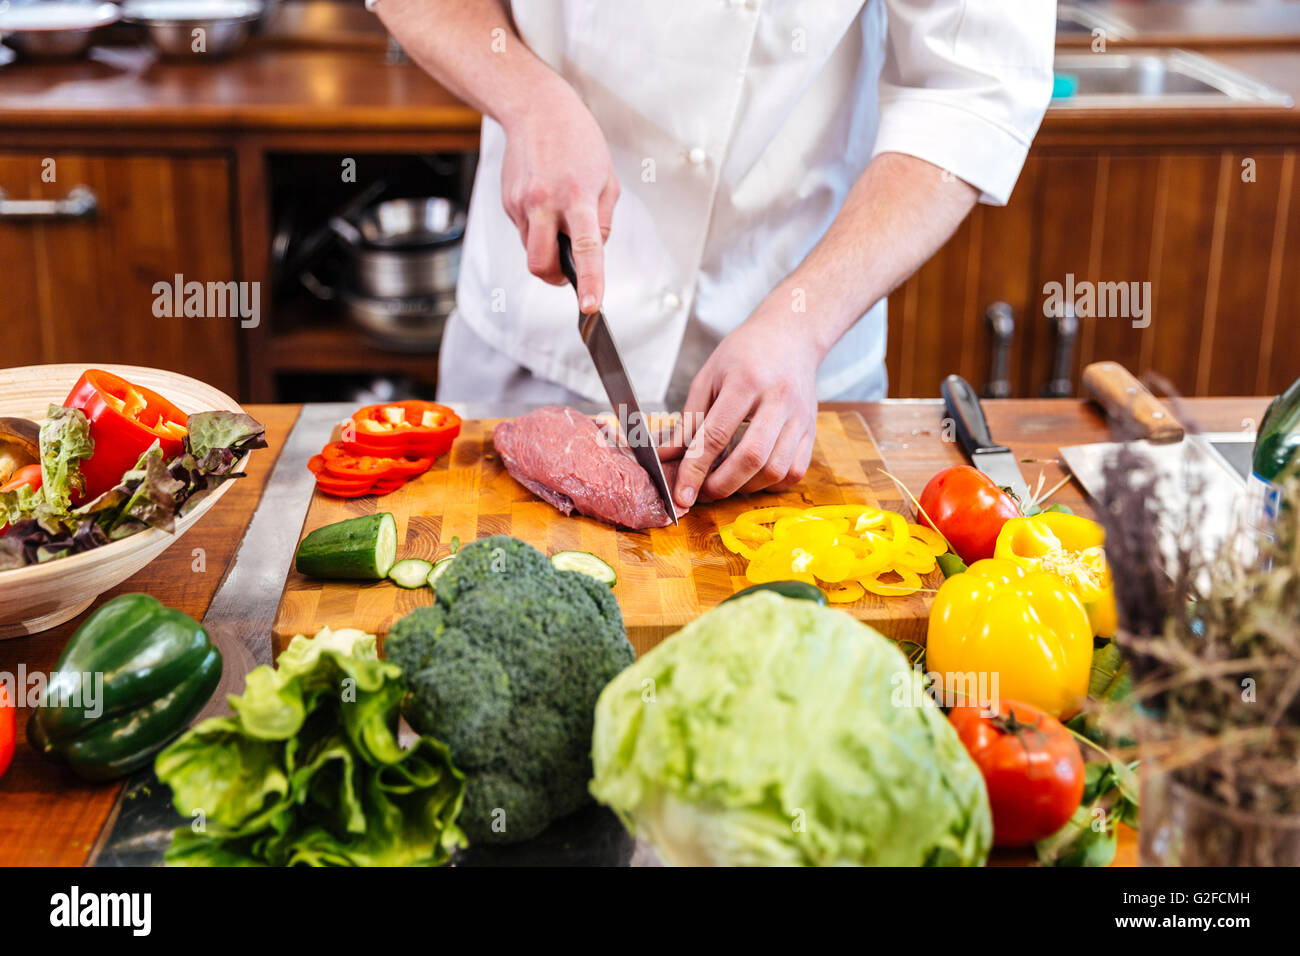 Profi-Koch Kochen stehen und Schneiden von rohem Fleisch und frisches Gemüse  in der Küche Stockfotografie - Alamy